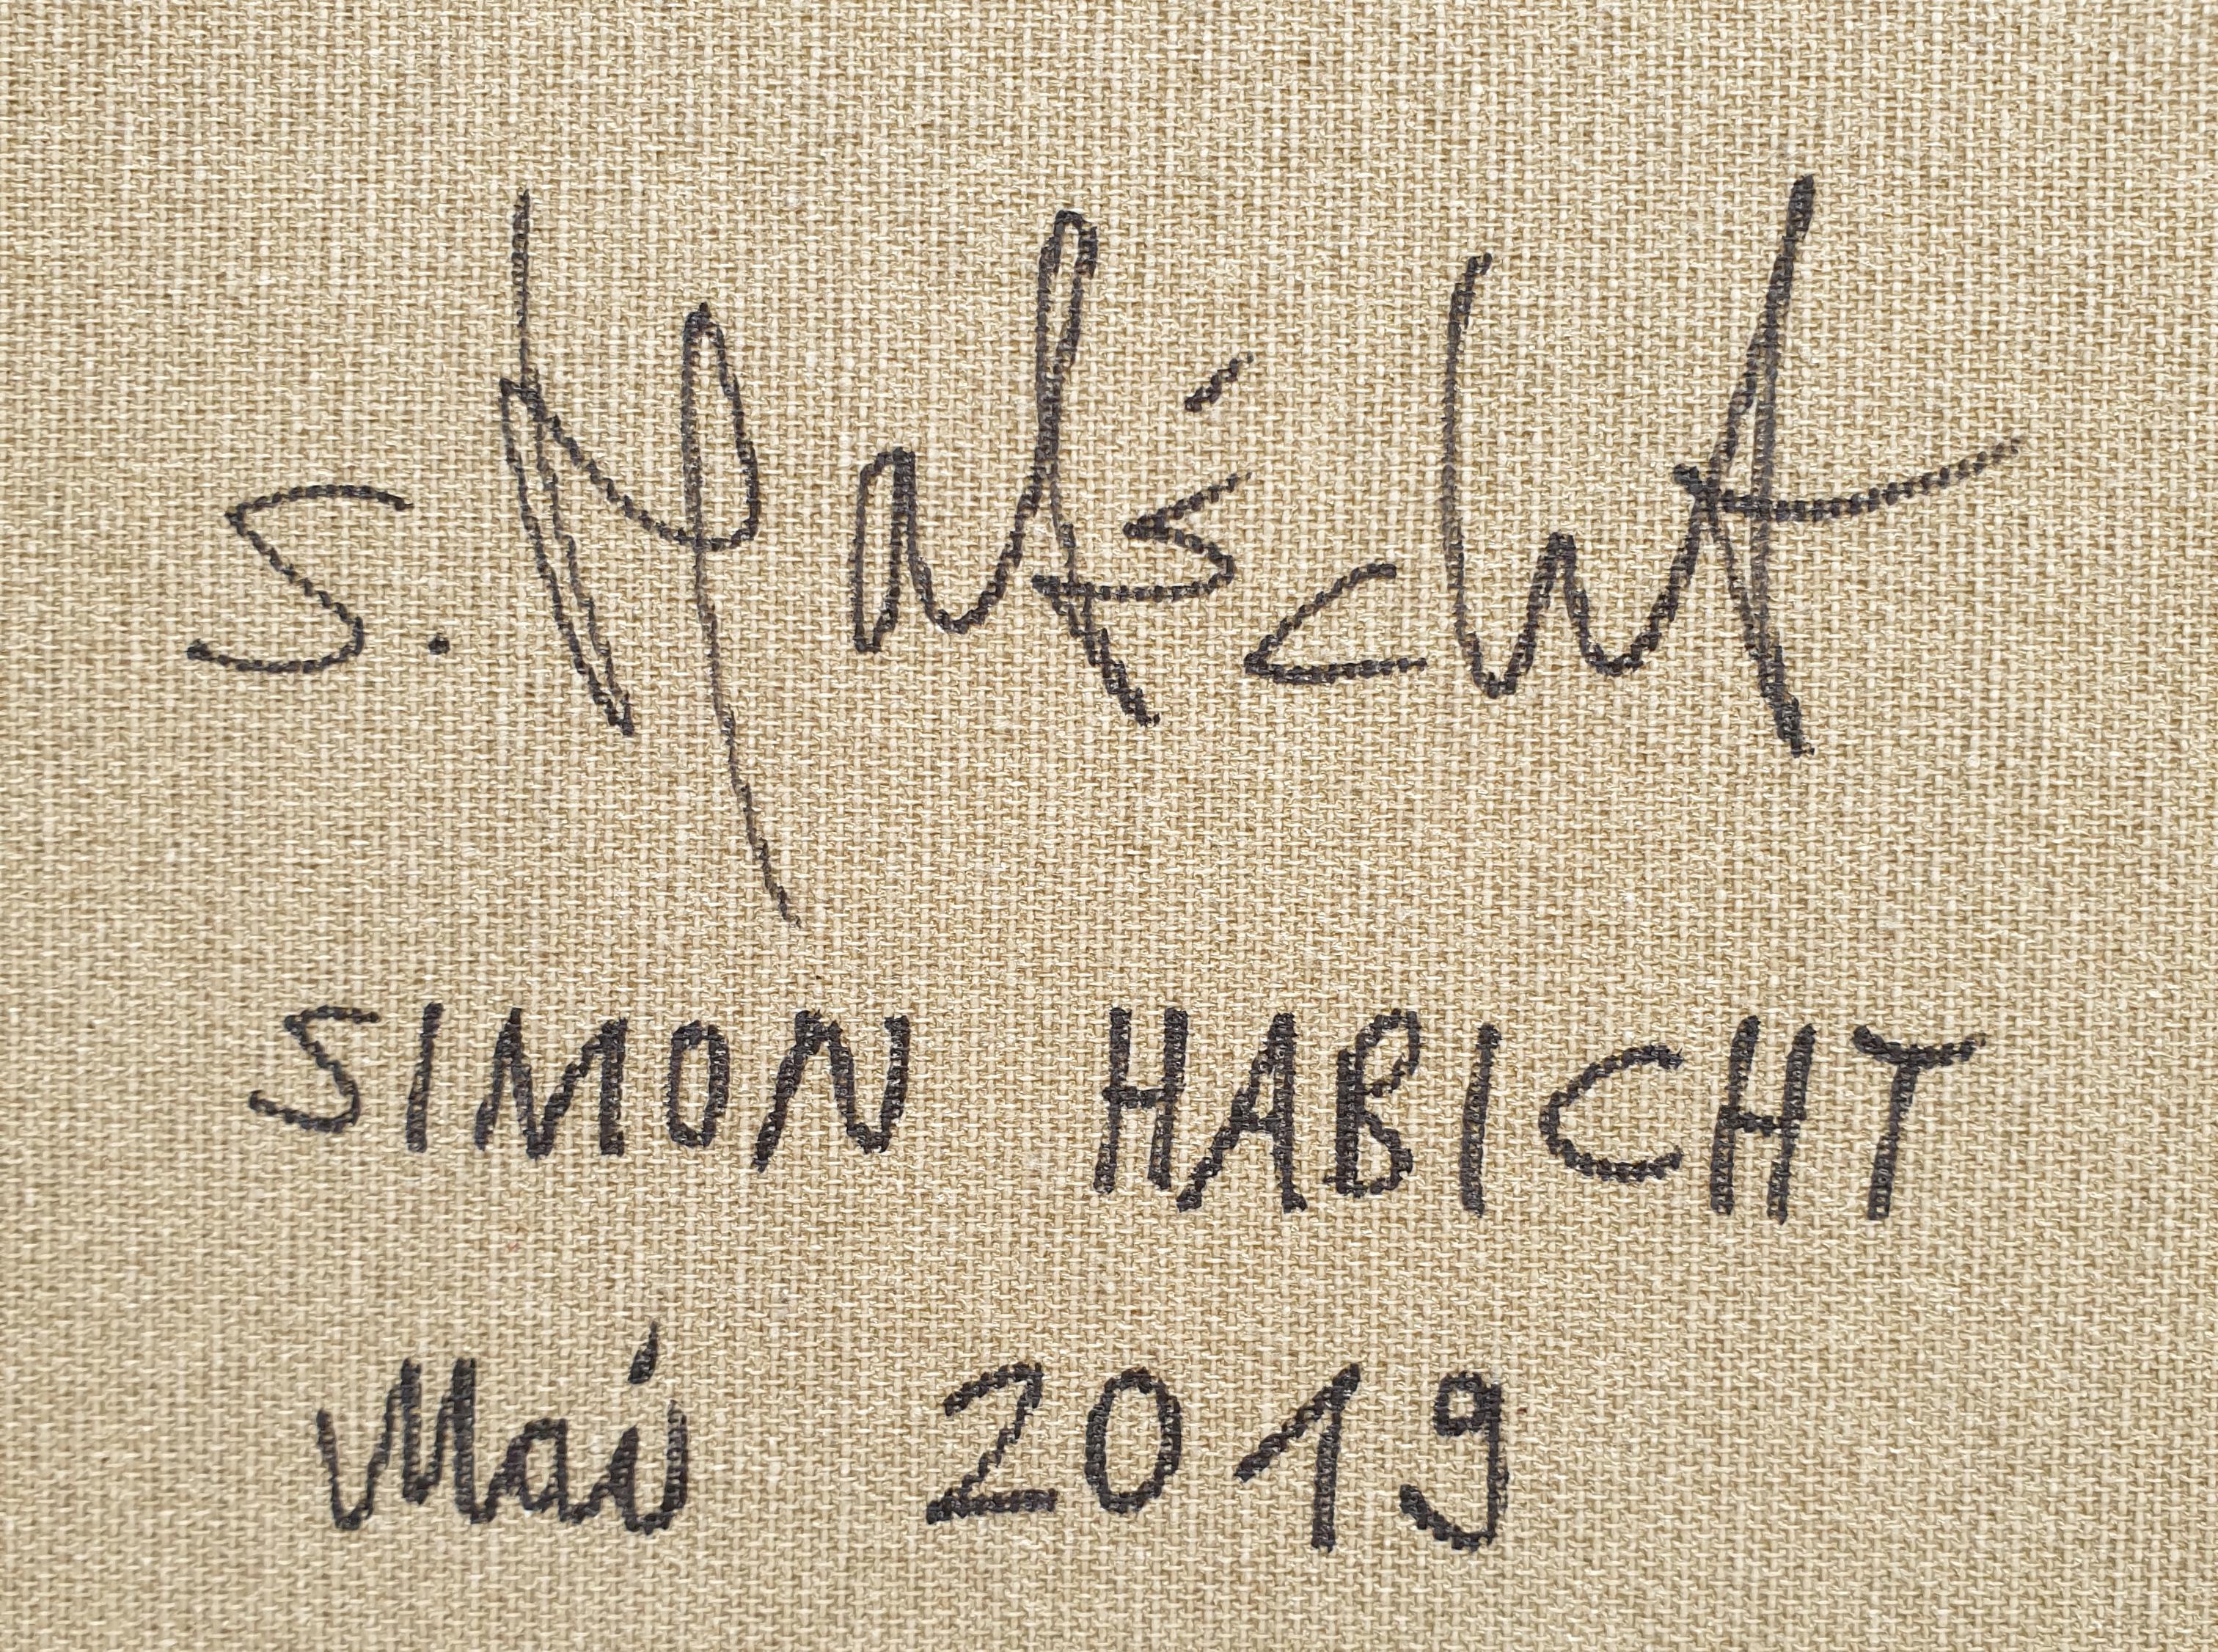 Ölgemälde auf Leinwand, 2019. Signiert und datiert auf der Rückseite. Ungerahmt. Hängefertig.
Abmessungen: 23,62 x 23,62 Zoll (60 x 60 cm) 

Simon Habicht wurde 1972 in Winterthur geboren. Aufgewachsen in Freienstein. Der Schweizer Künstler